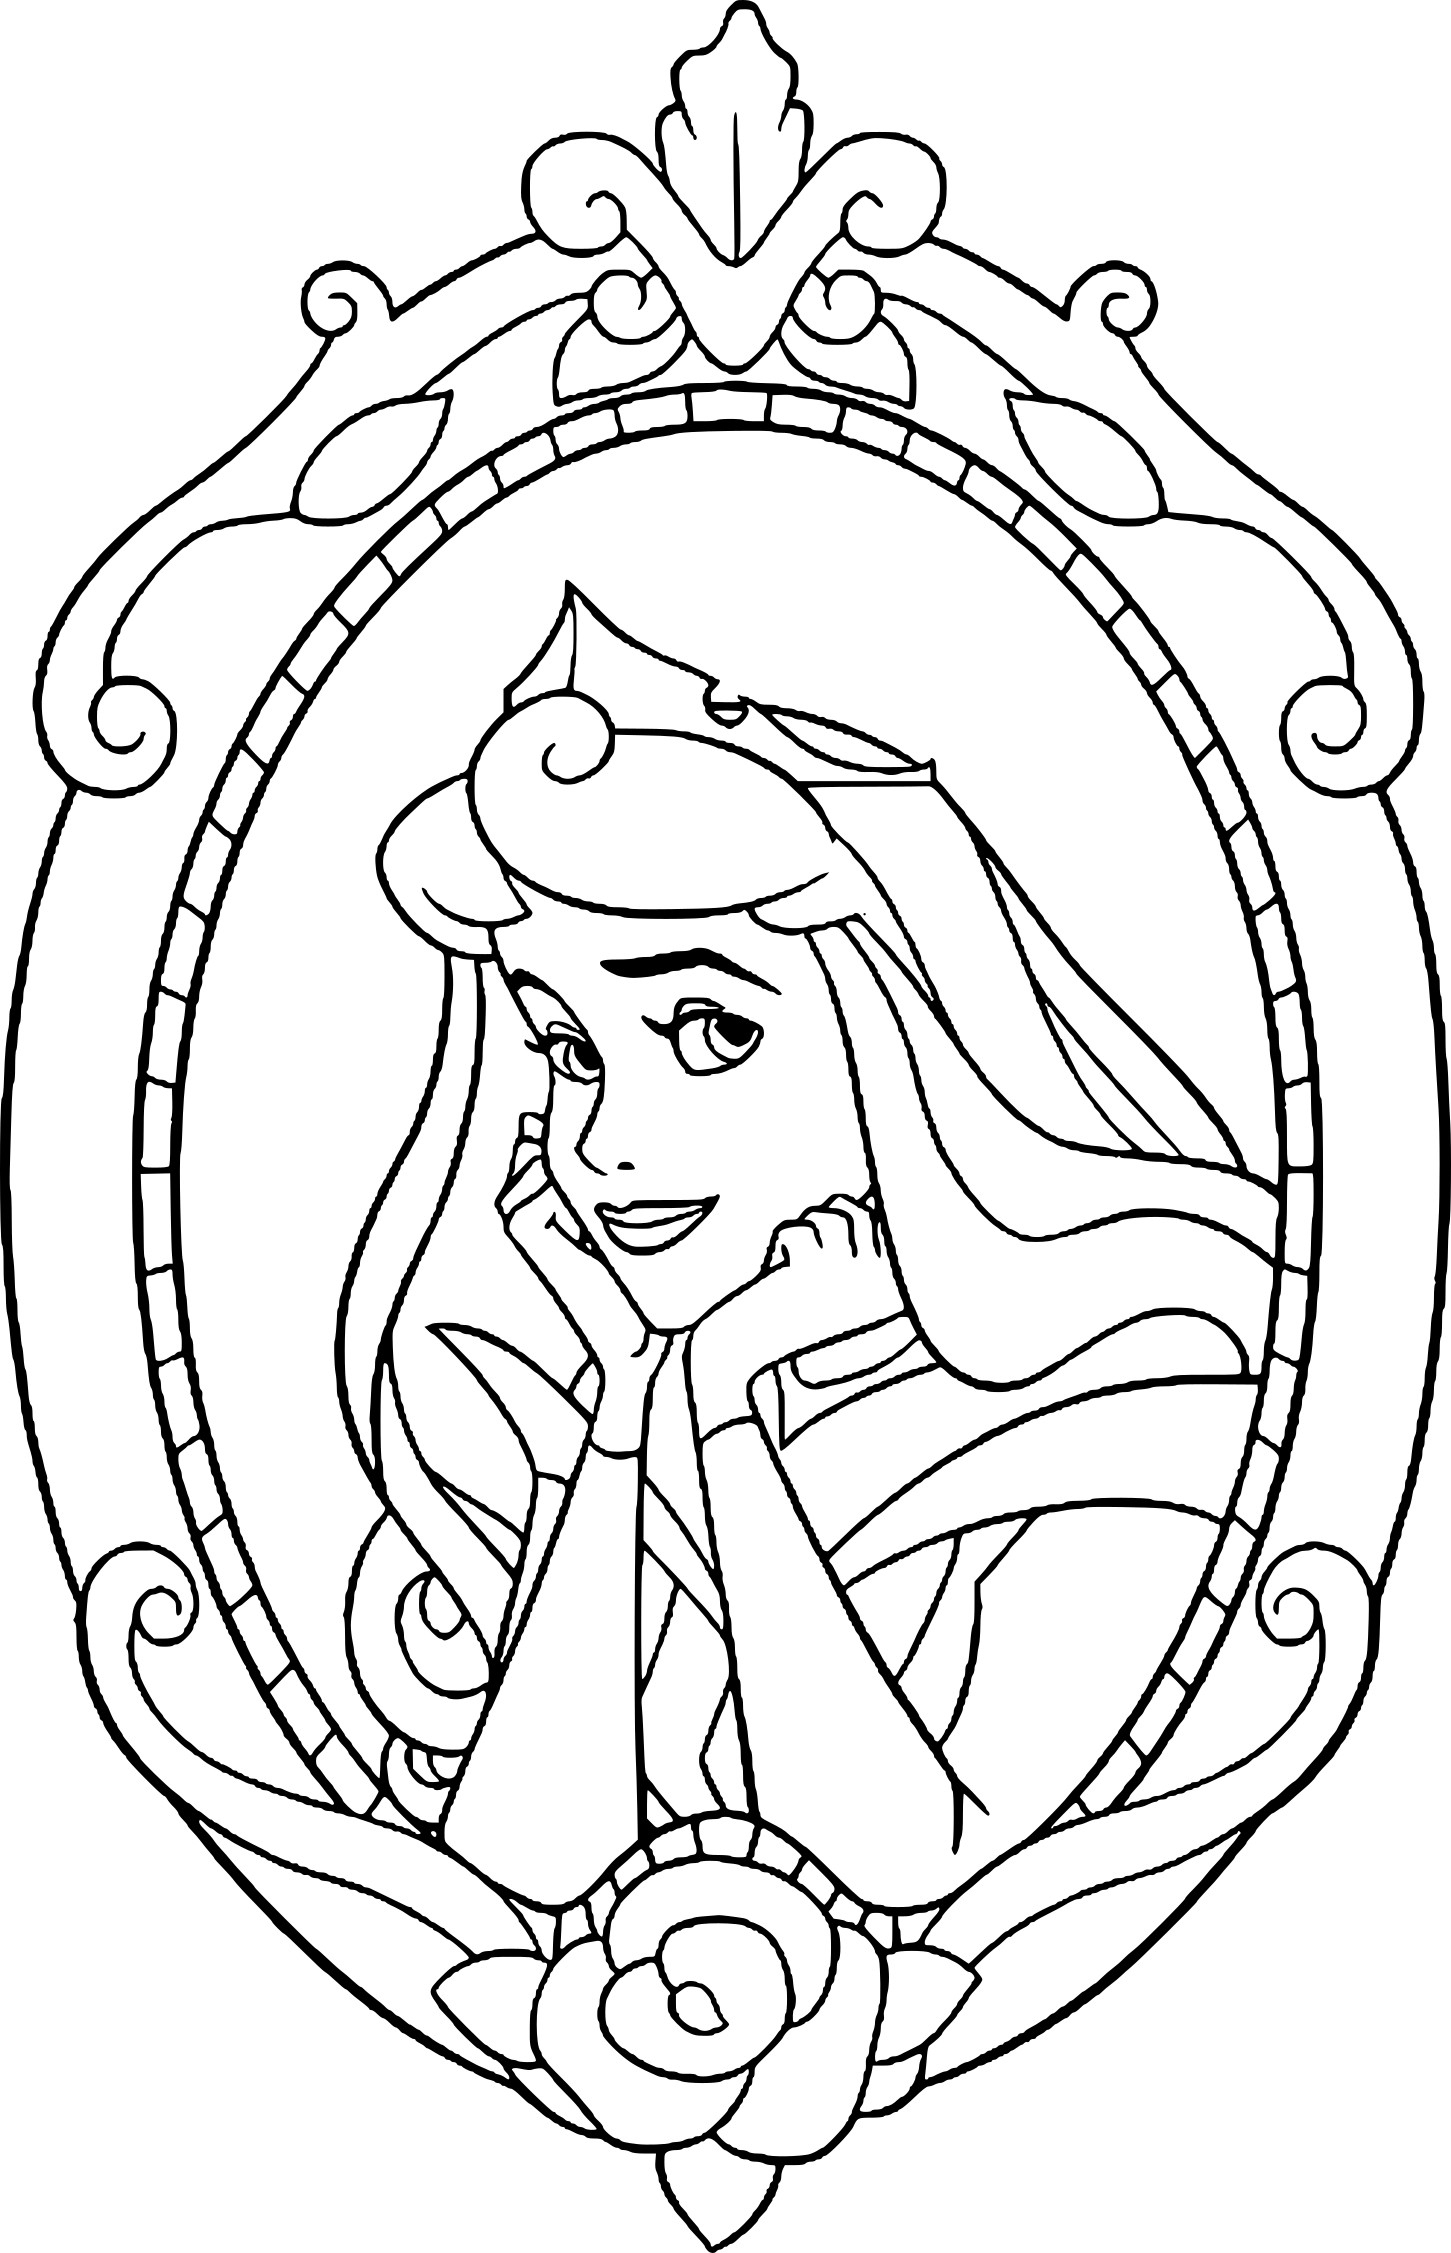 Coloriage Princesse Aurore À Imprimer - Coloriage Disney concernant Coloriage Princesses Disney À Imprimer